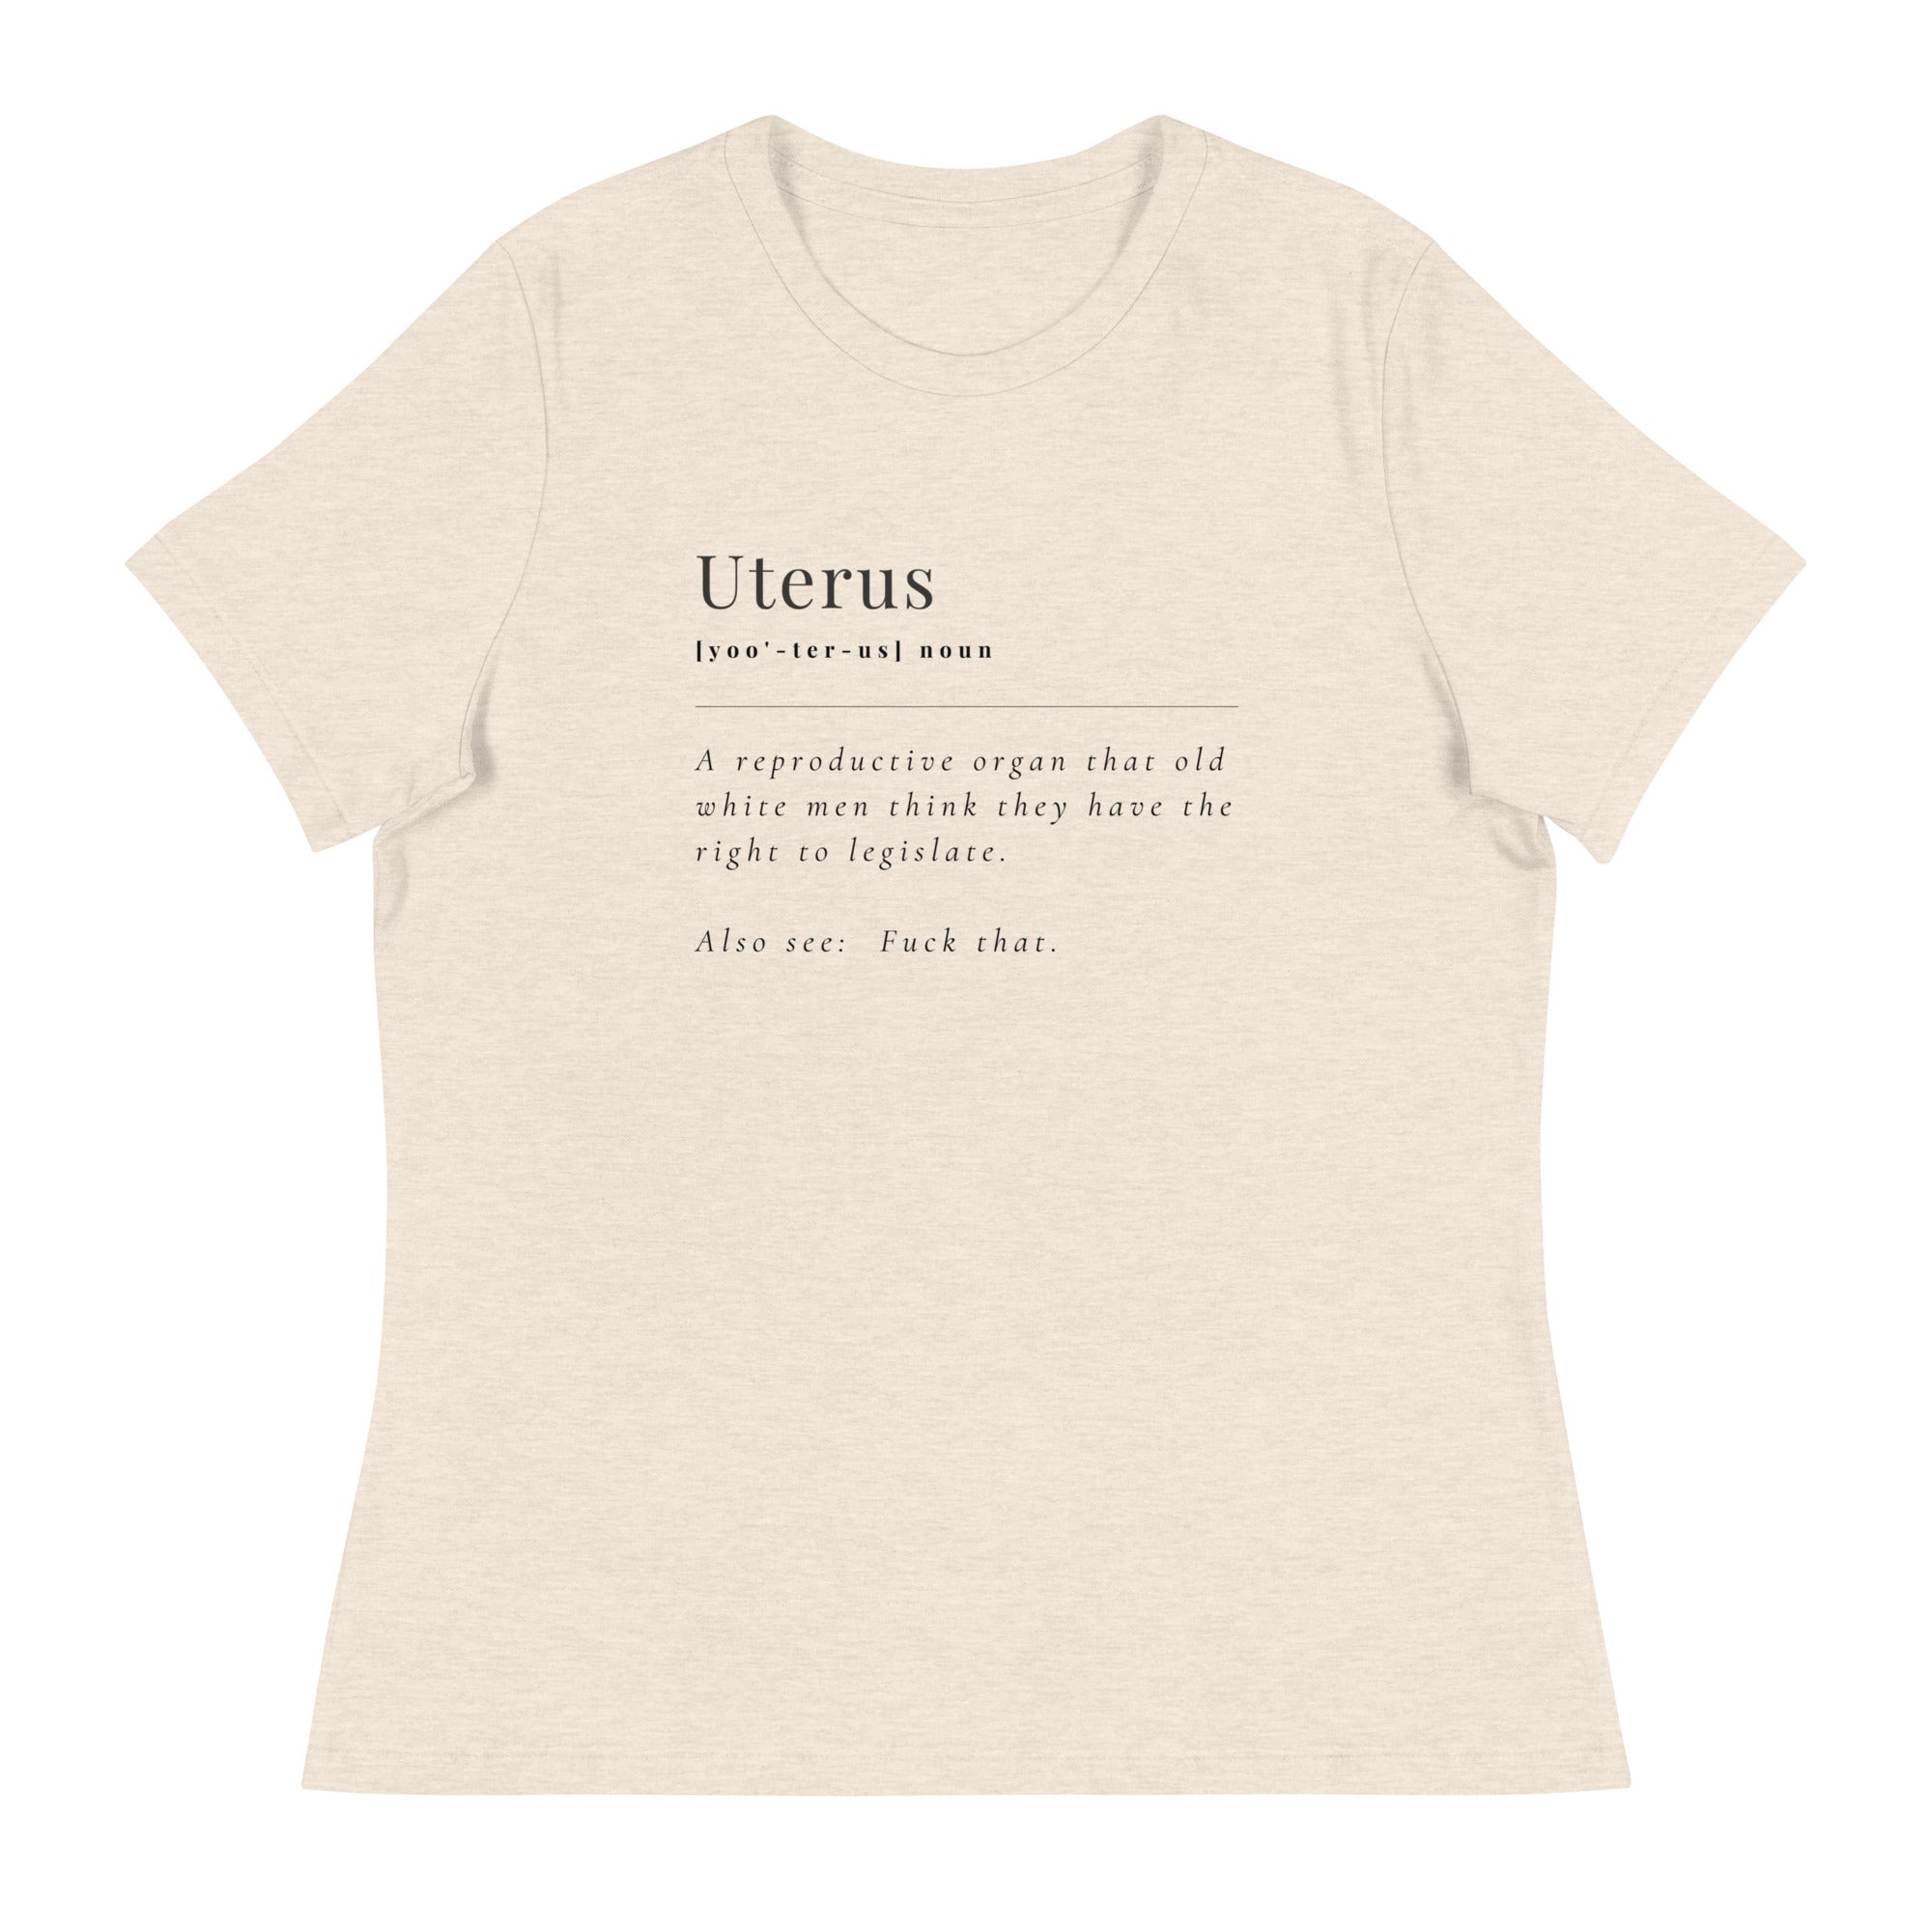 Uterus - Women's Relaxed T-Shirt